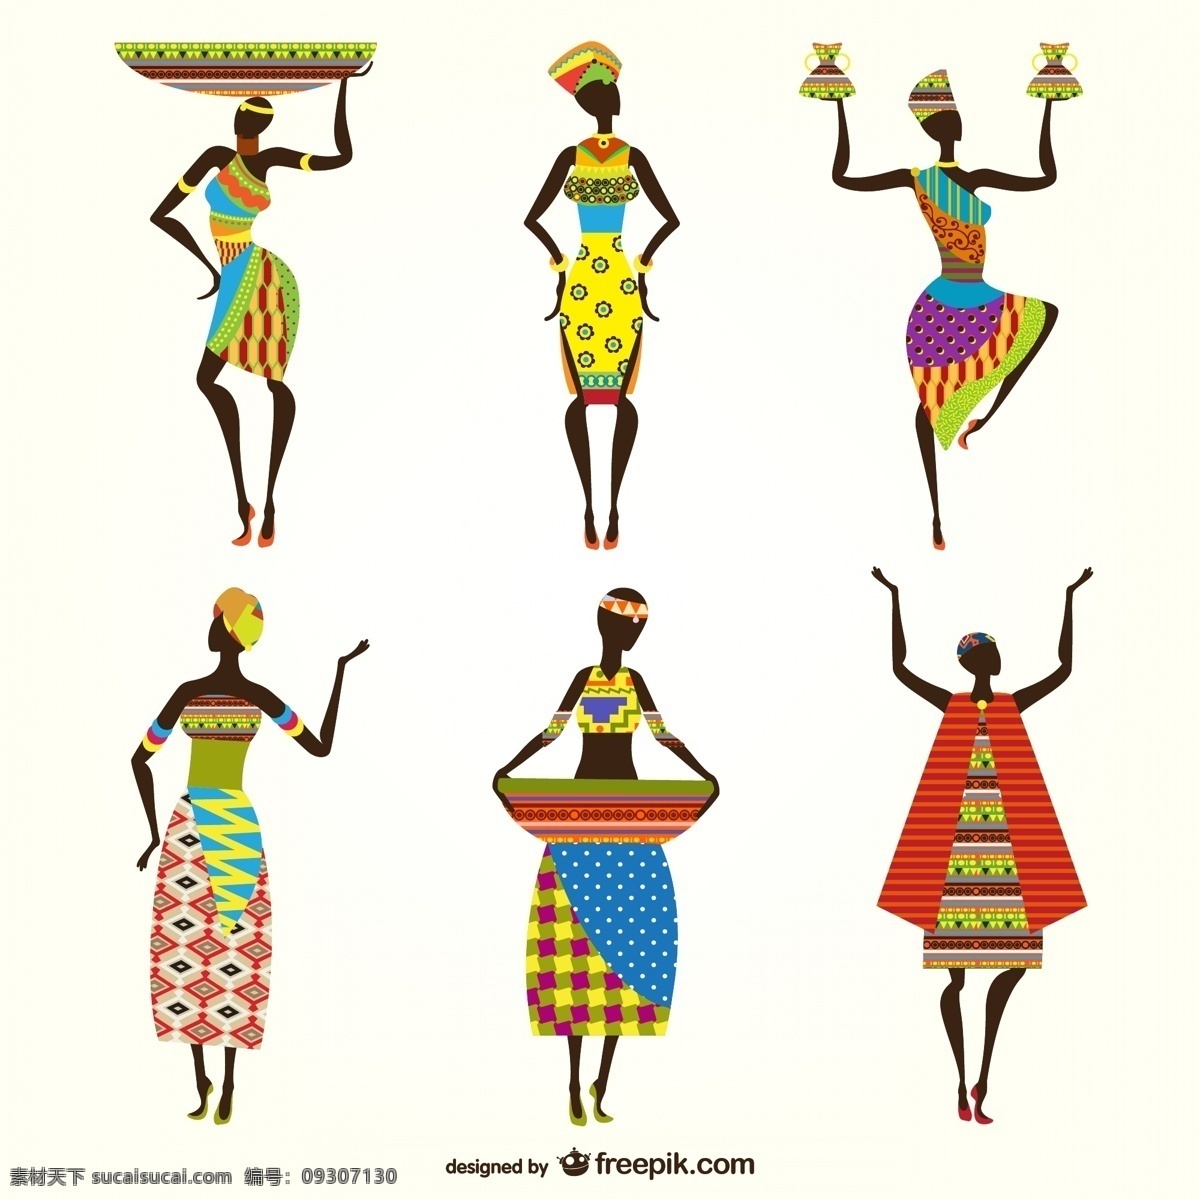 非洲女子 设计矢量 非洲 民族 女子 彩色 卡通 服饰 矢量图 ai格式 人物 人物图库 女性妇女